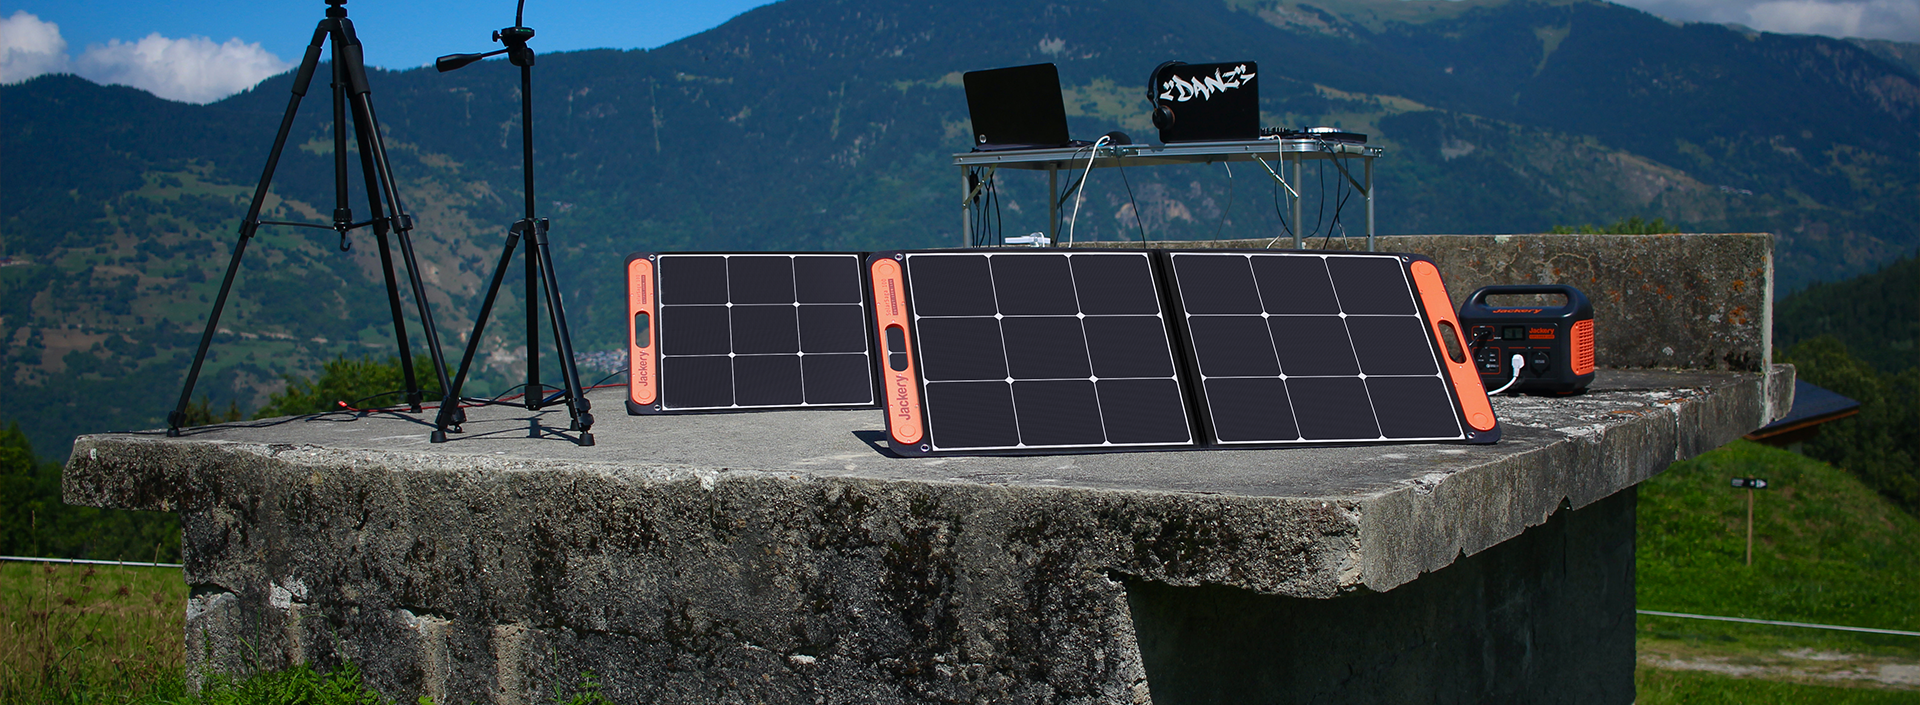 Estación de Energía Portátil 1000W Solar – Paneles Solares Perú